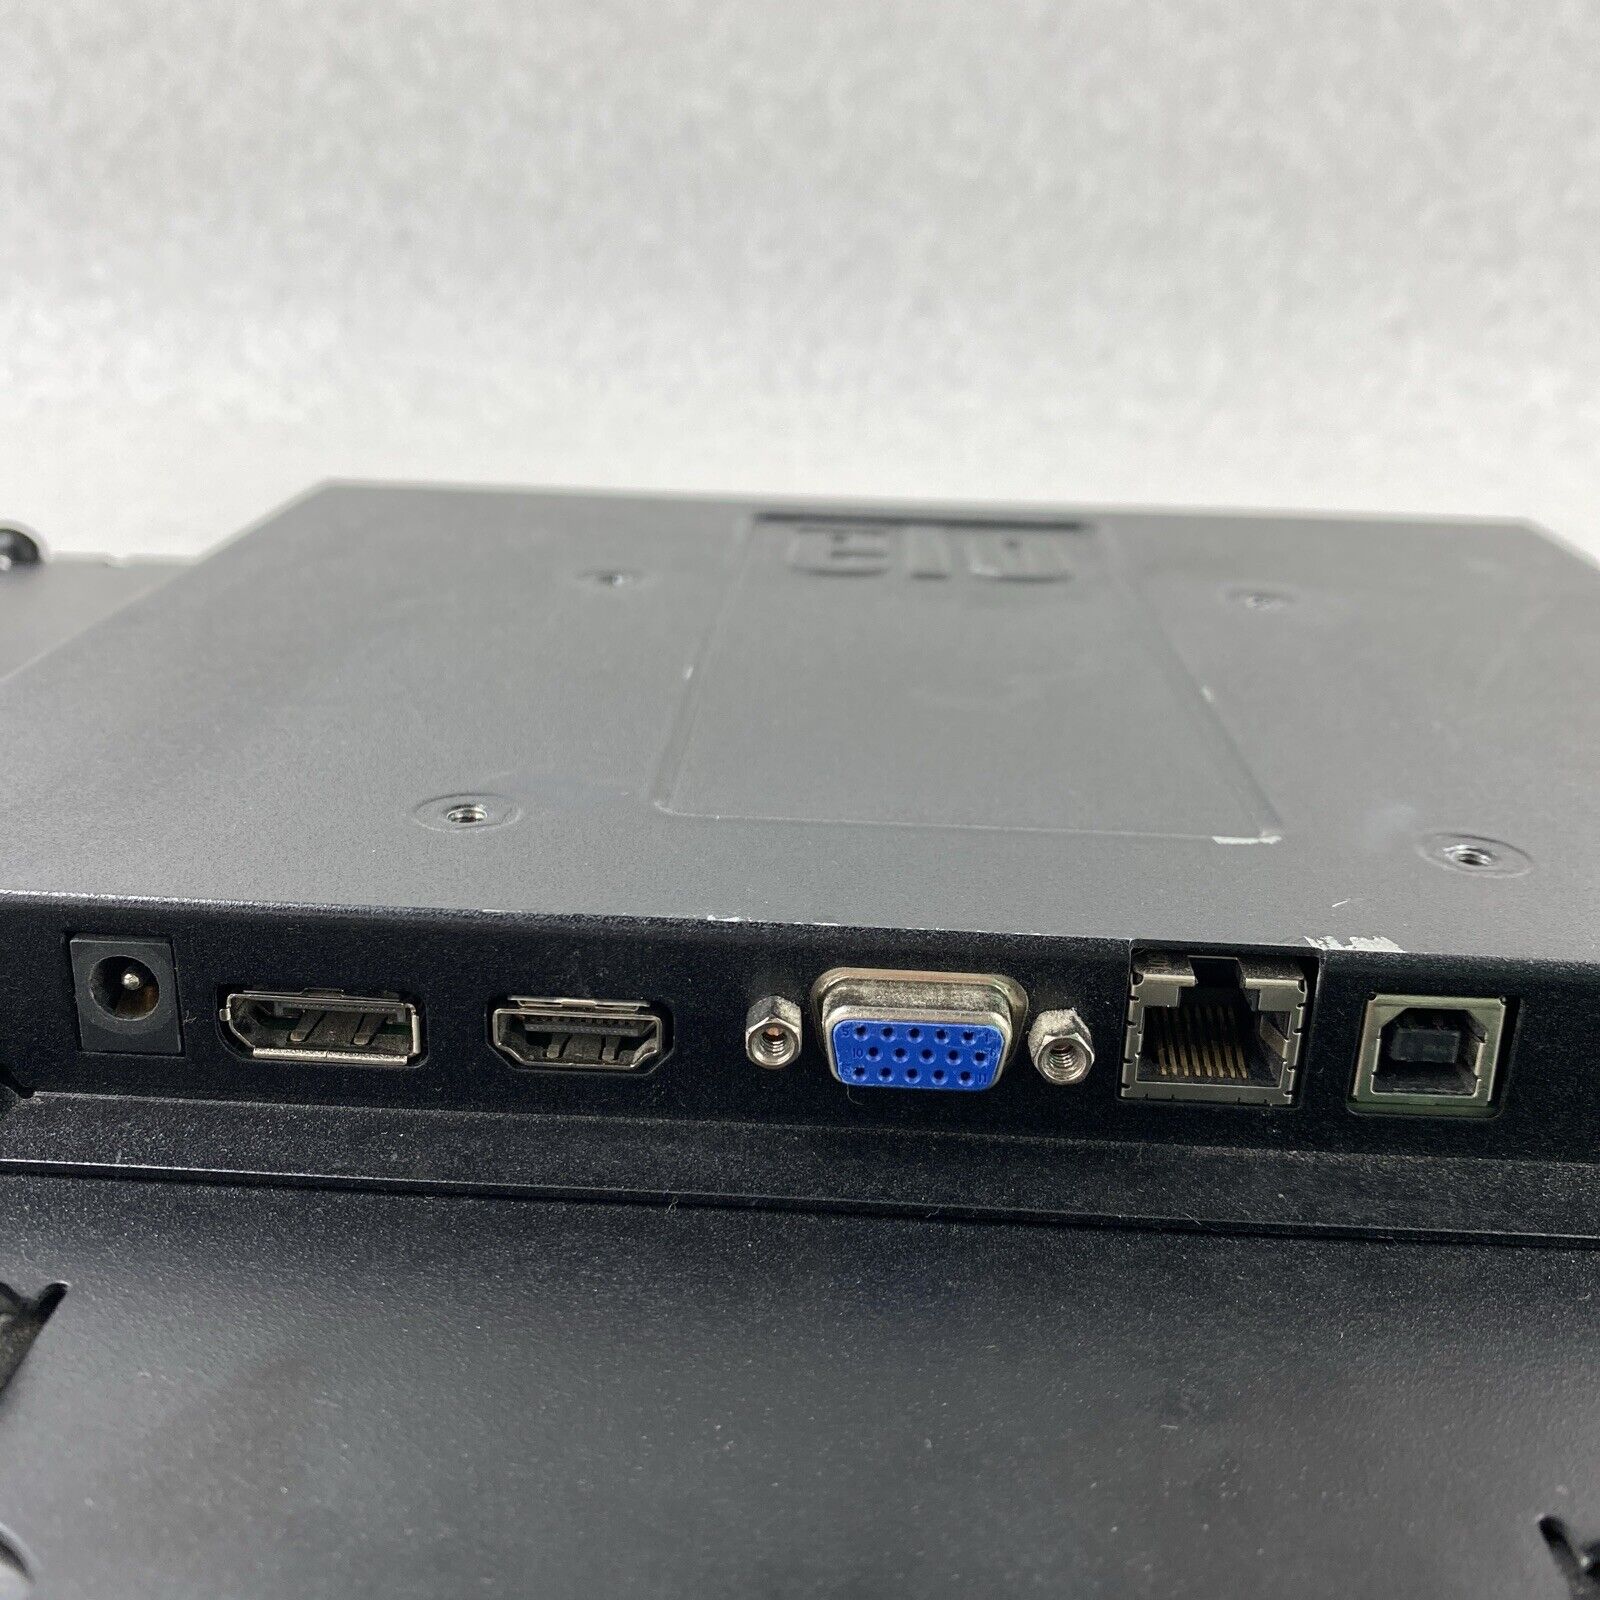 ELO ET2094L E197628 19.5" VGA OSD USB Touchscreen Monitor NO POWER SUPPLY